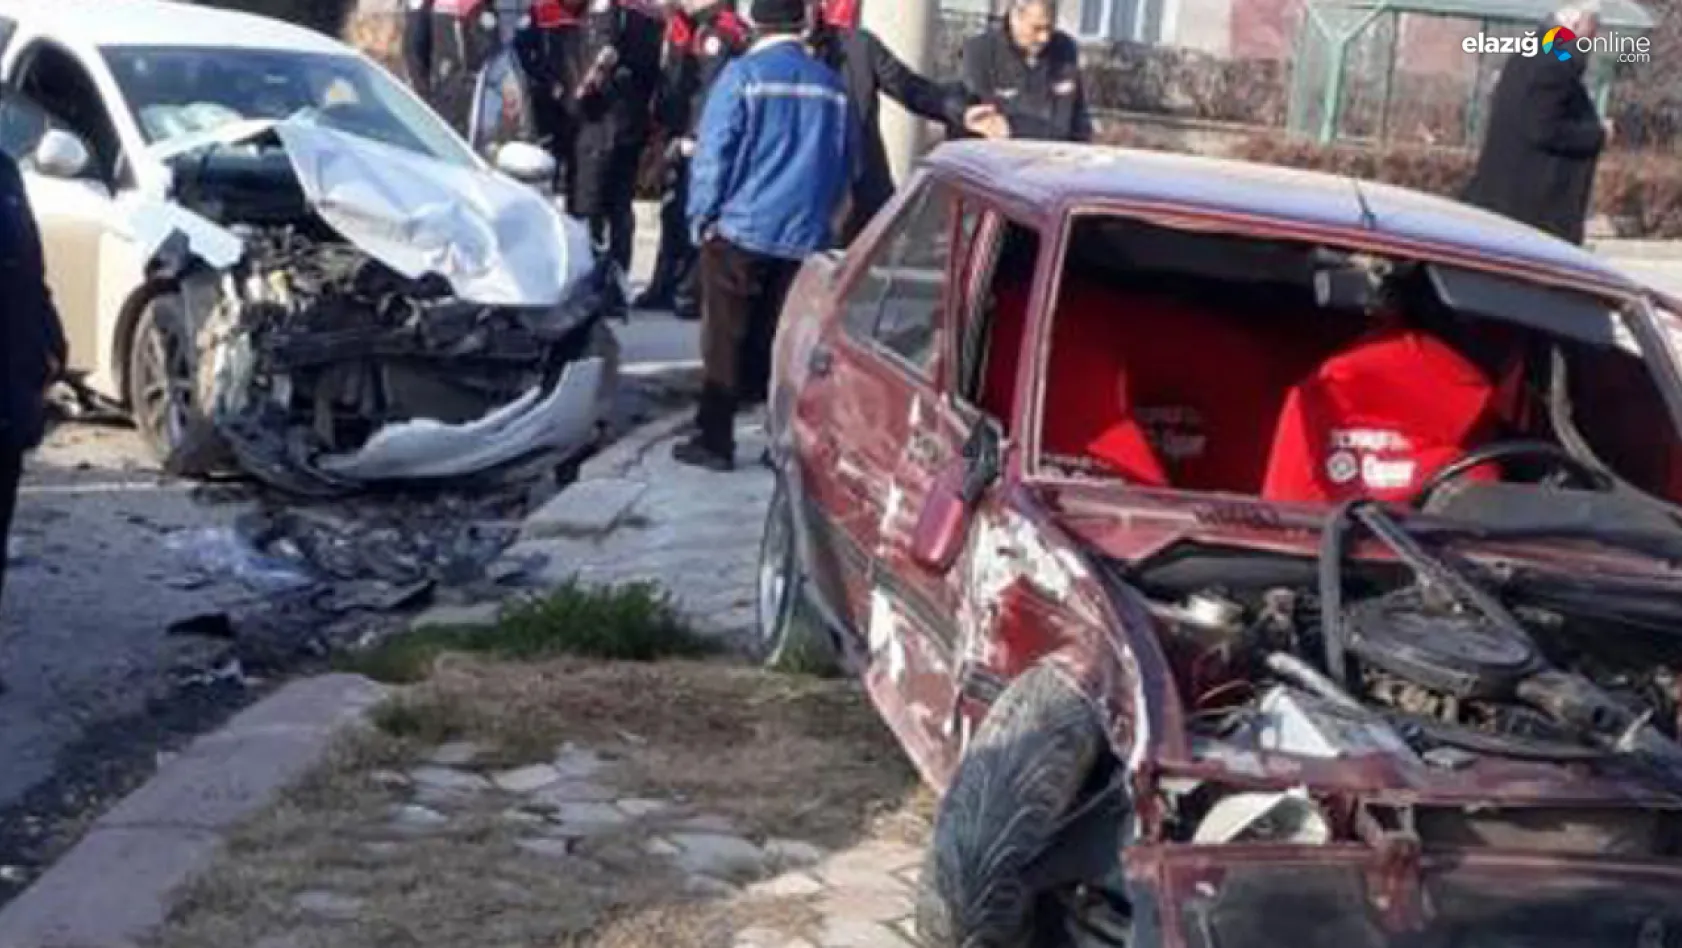 Elazığ'da meydana gelen trafik kazasında 2 kişi yaralandı